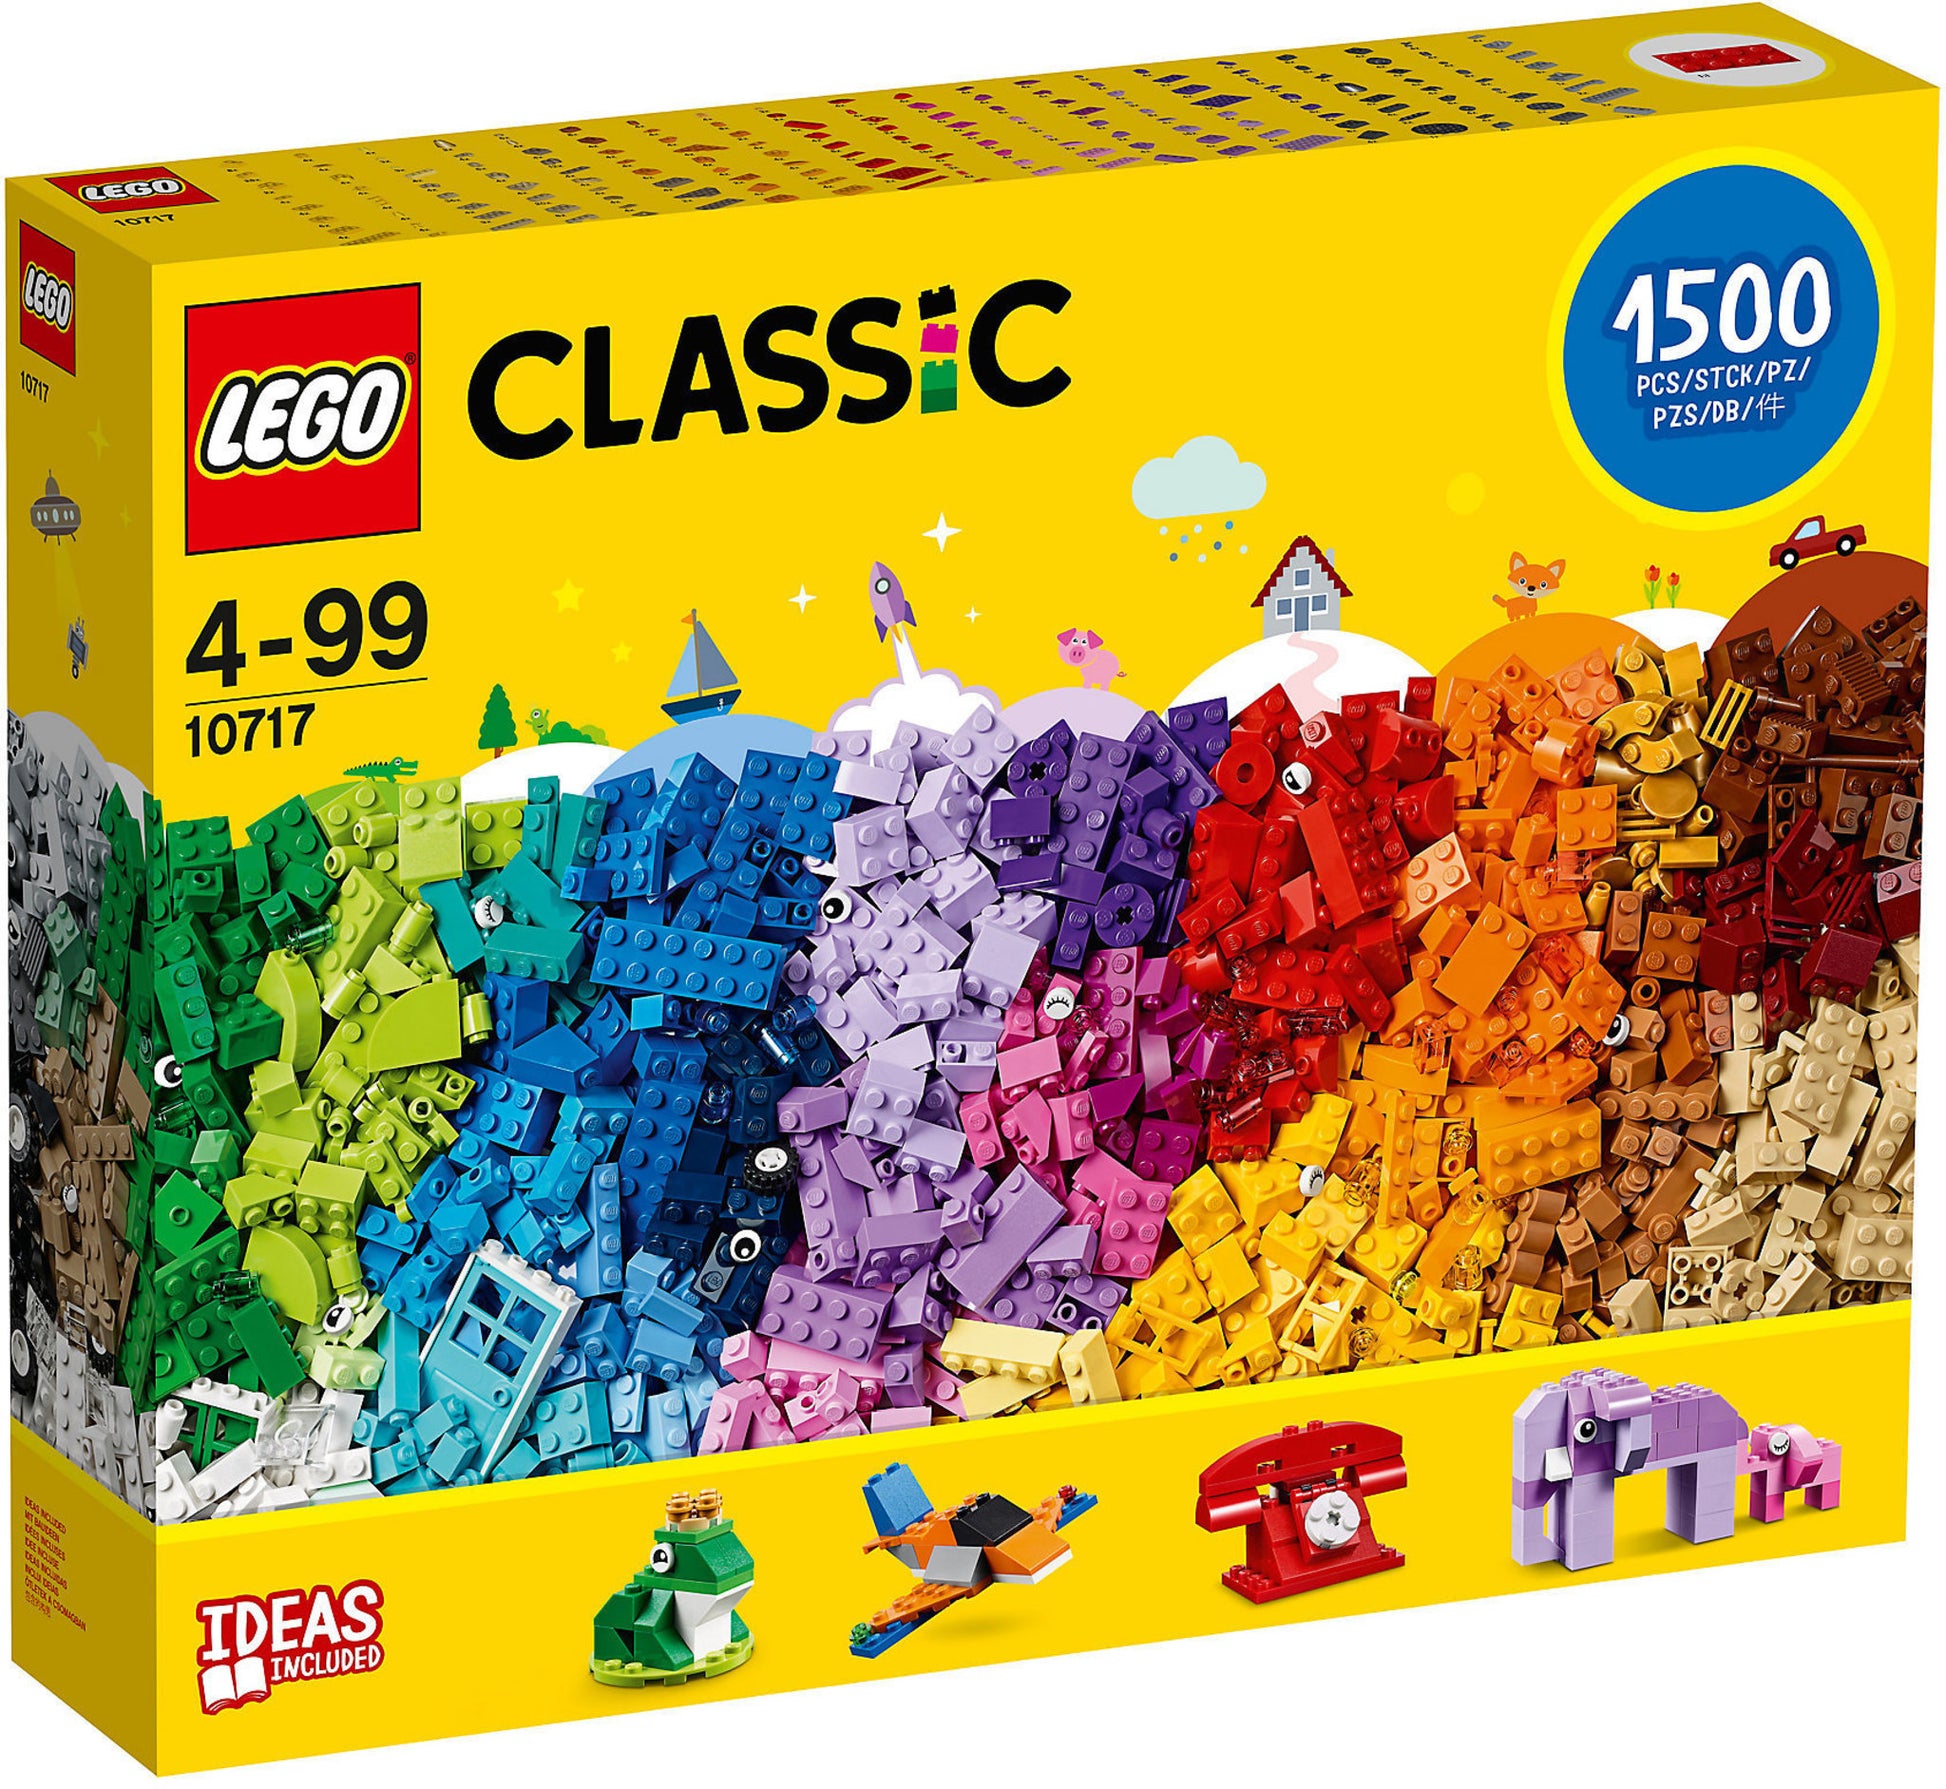 10717 LEGO Classic - Mattoncini, Mattoncini, Mattoncini – sgorbatipiacenza